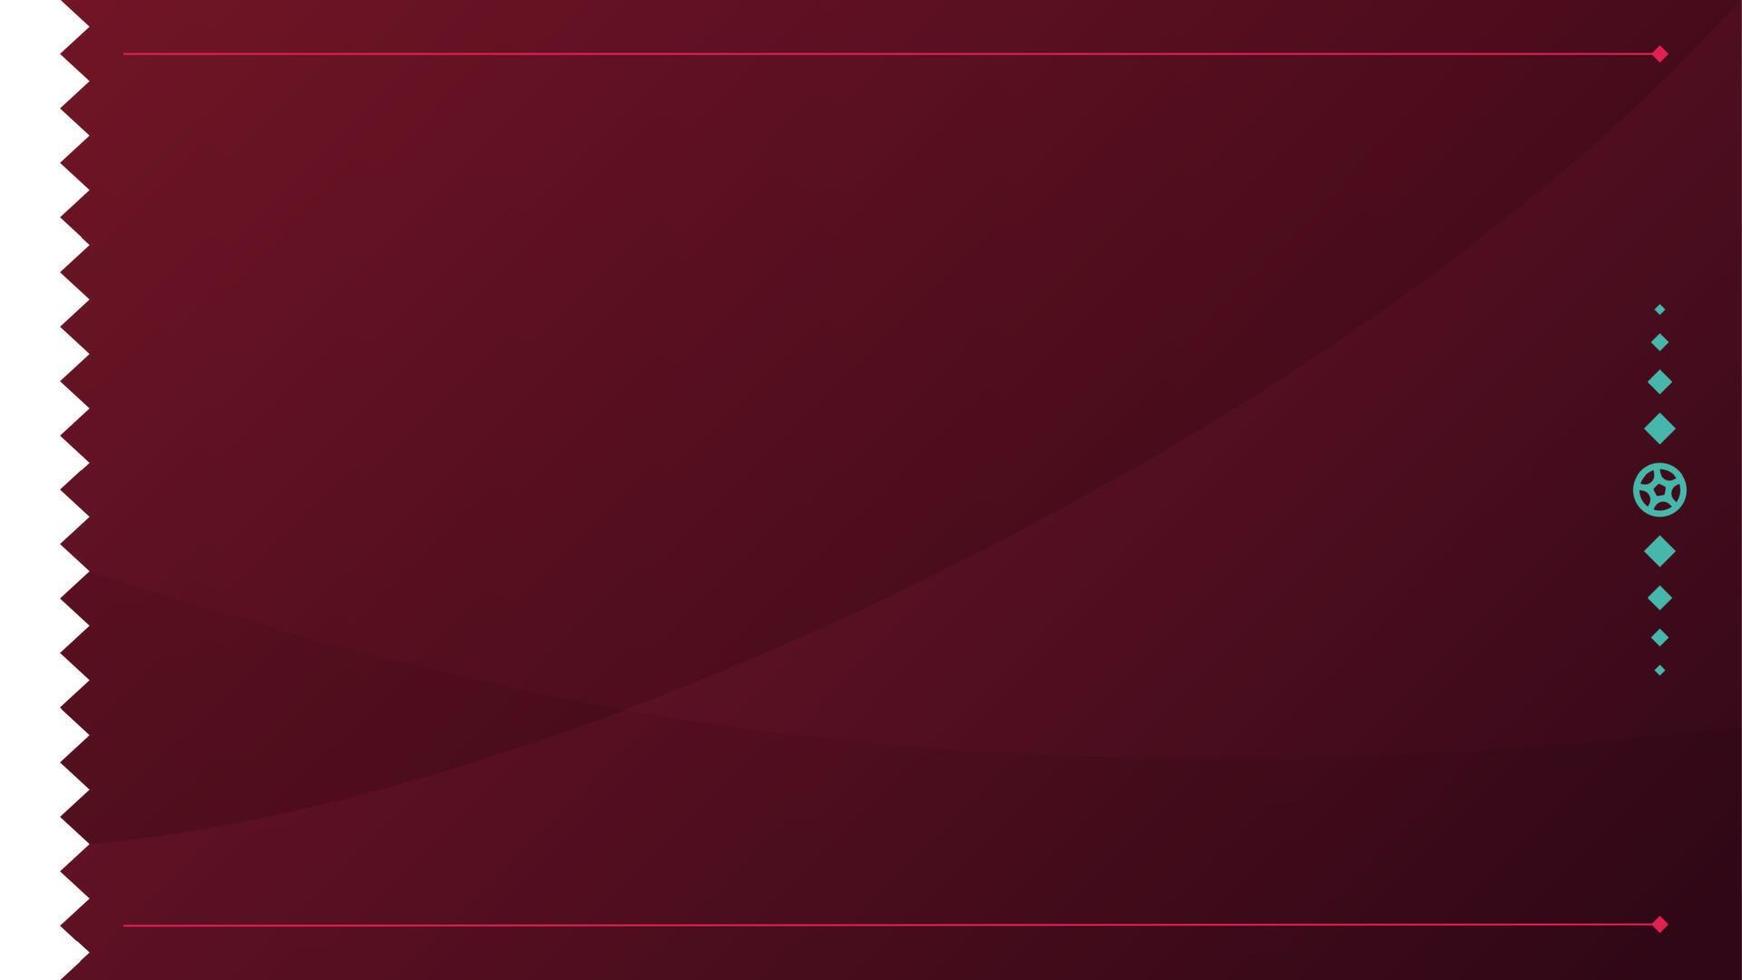 fotboll 2022 turnering bakgrund. vektor illustration fotboll mönster för banner, kort, webbplats. vinröd färg nationalflagga qatar